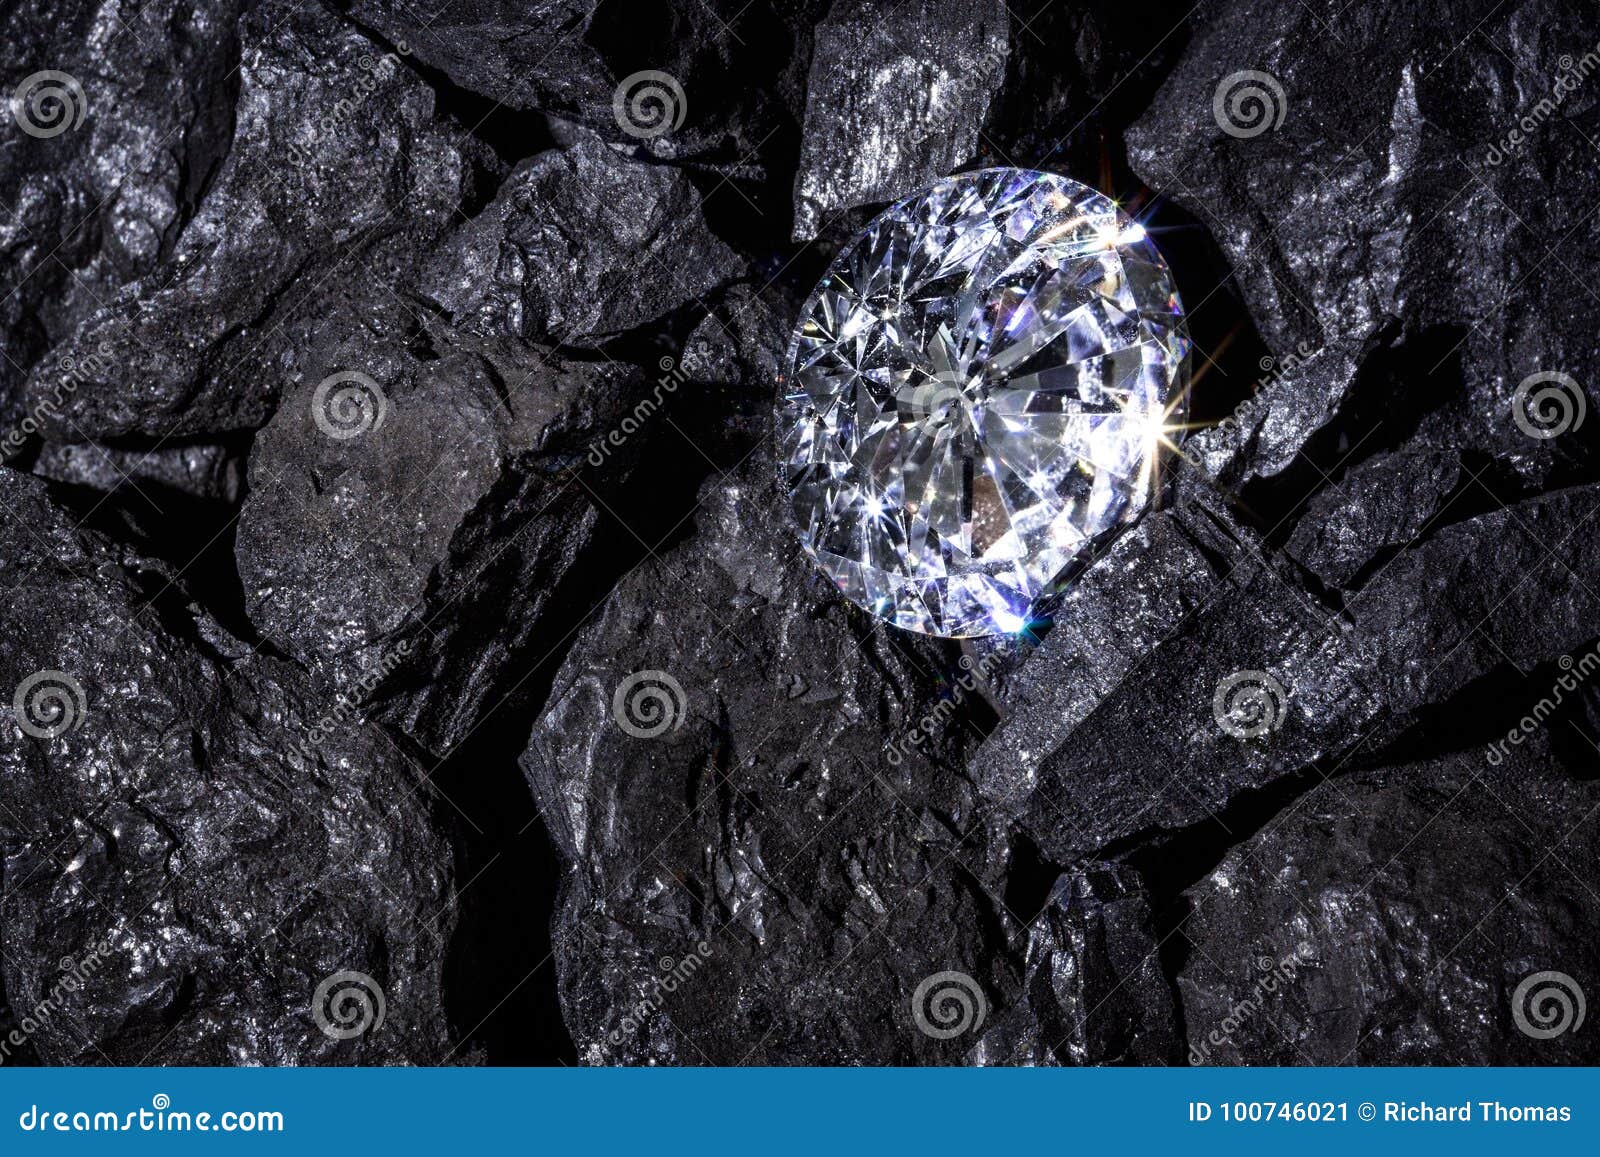 diamond amongst coal